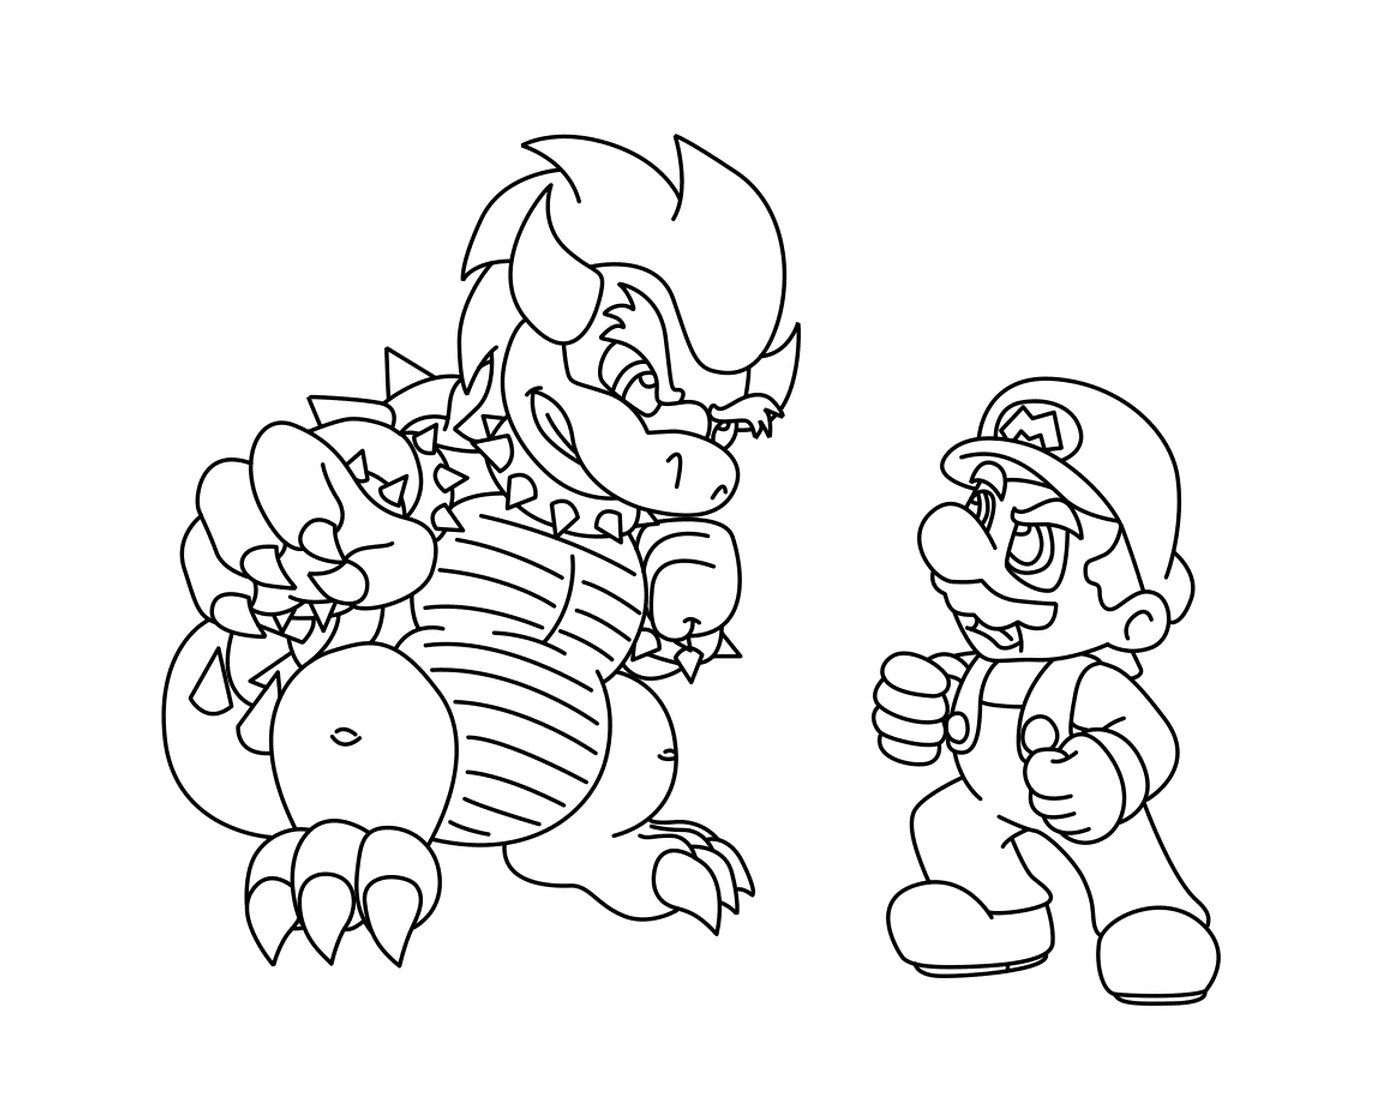  Super Mario Bros contro Bowser 